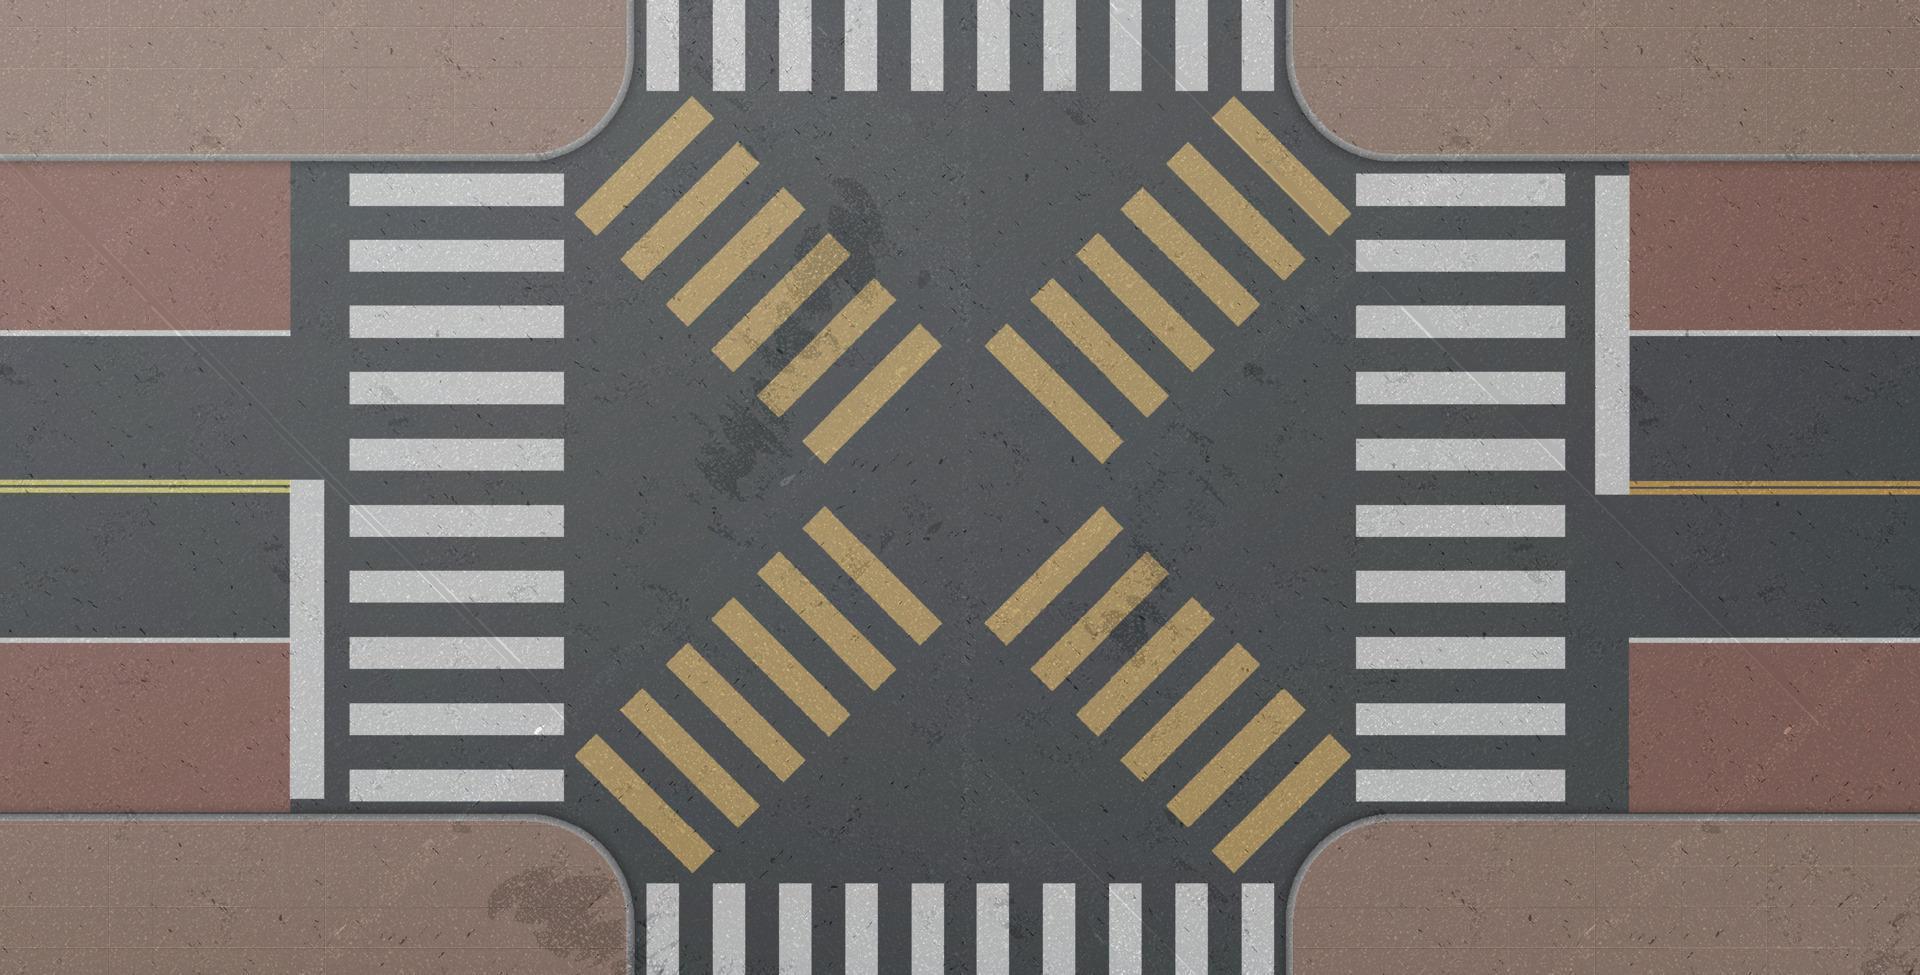 Zebra, road intersection, city crosswalk, top view vector